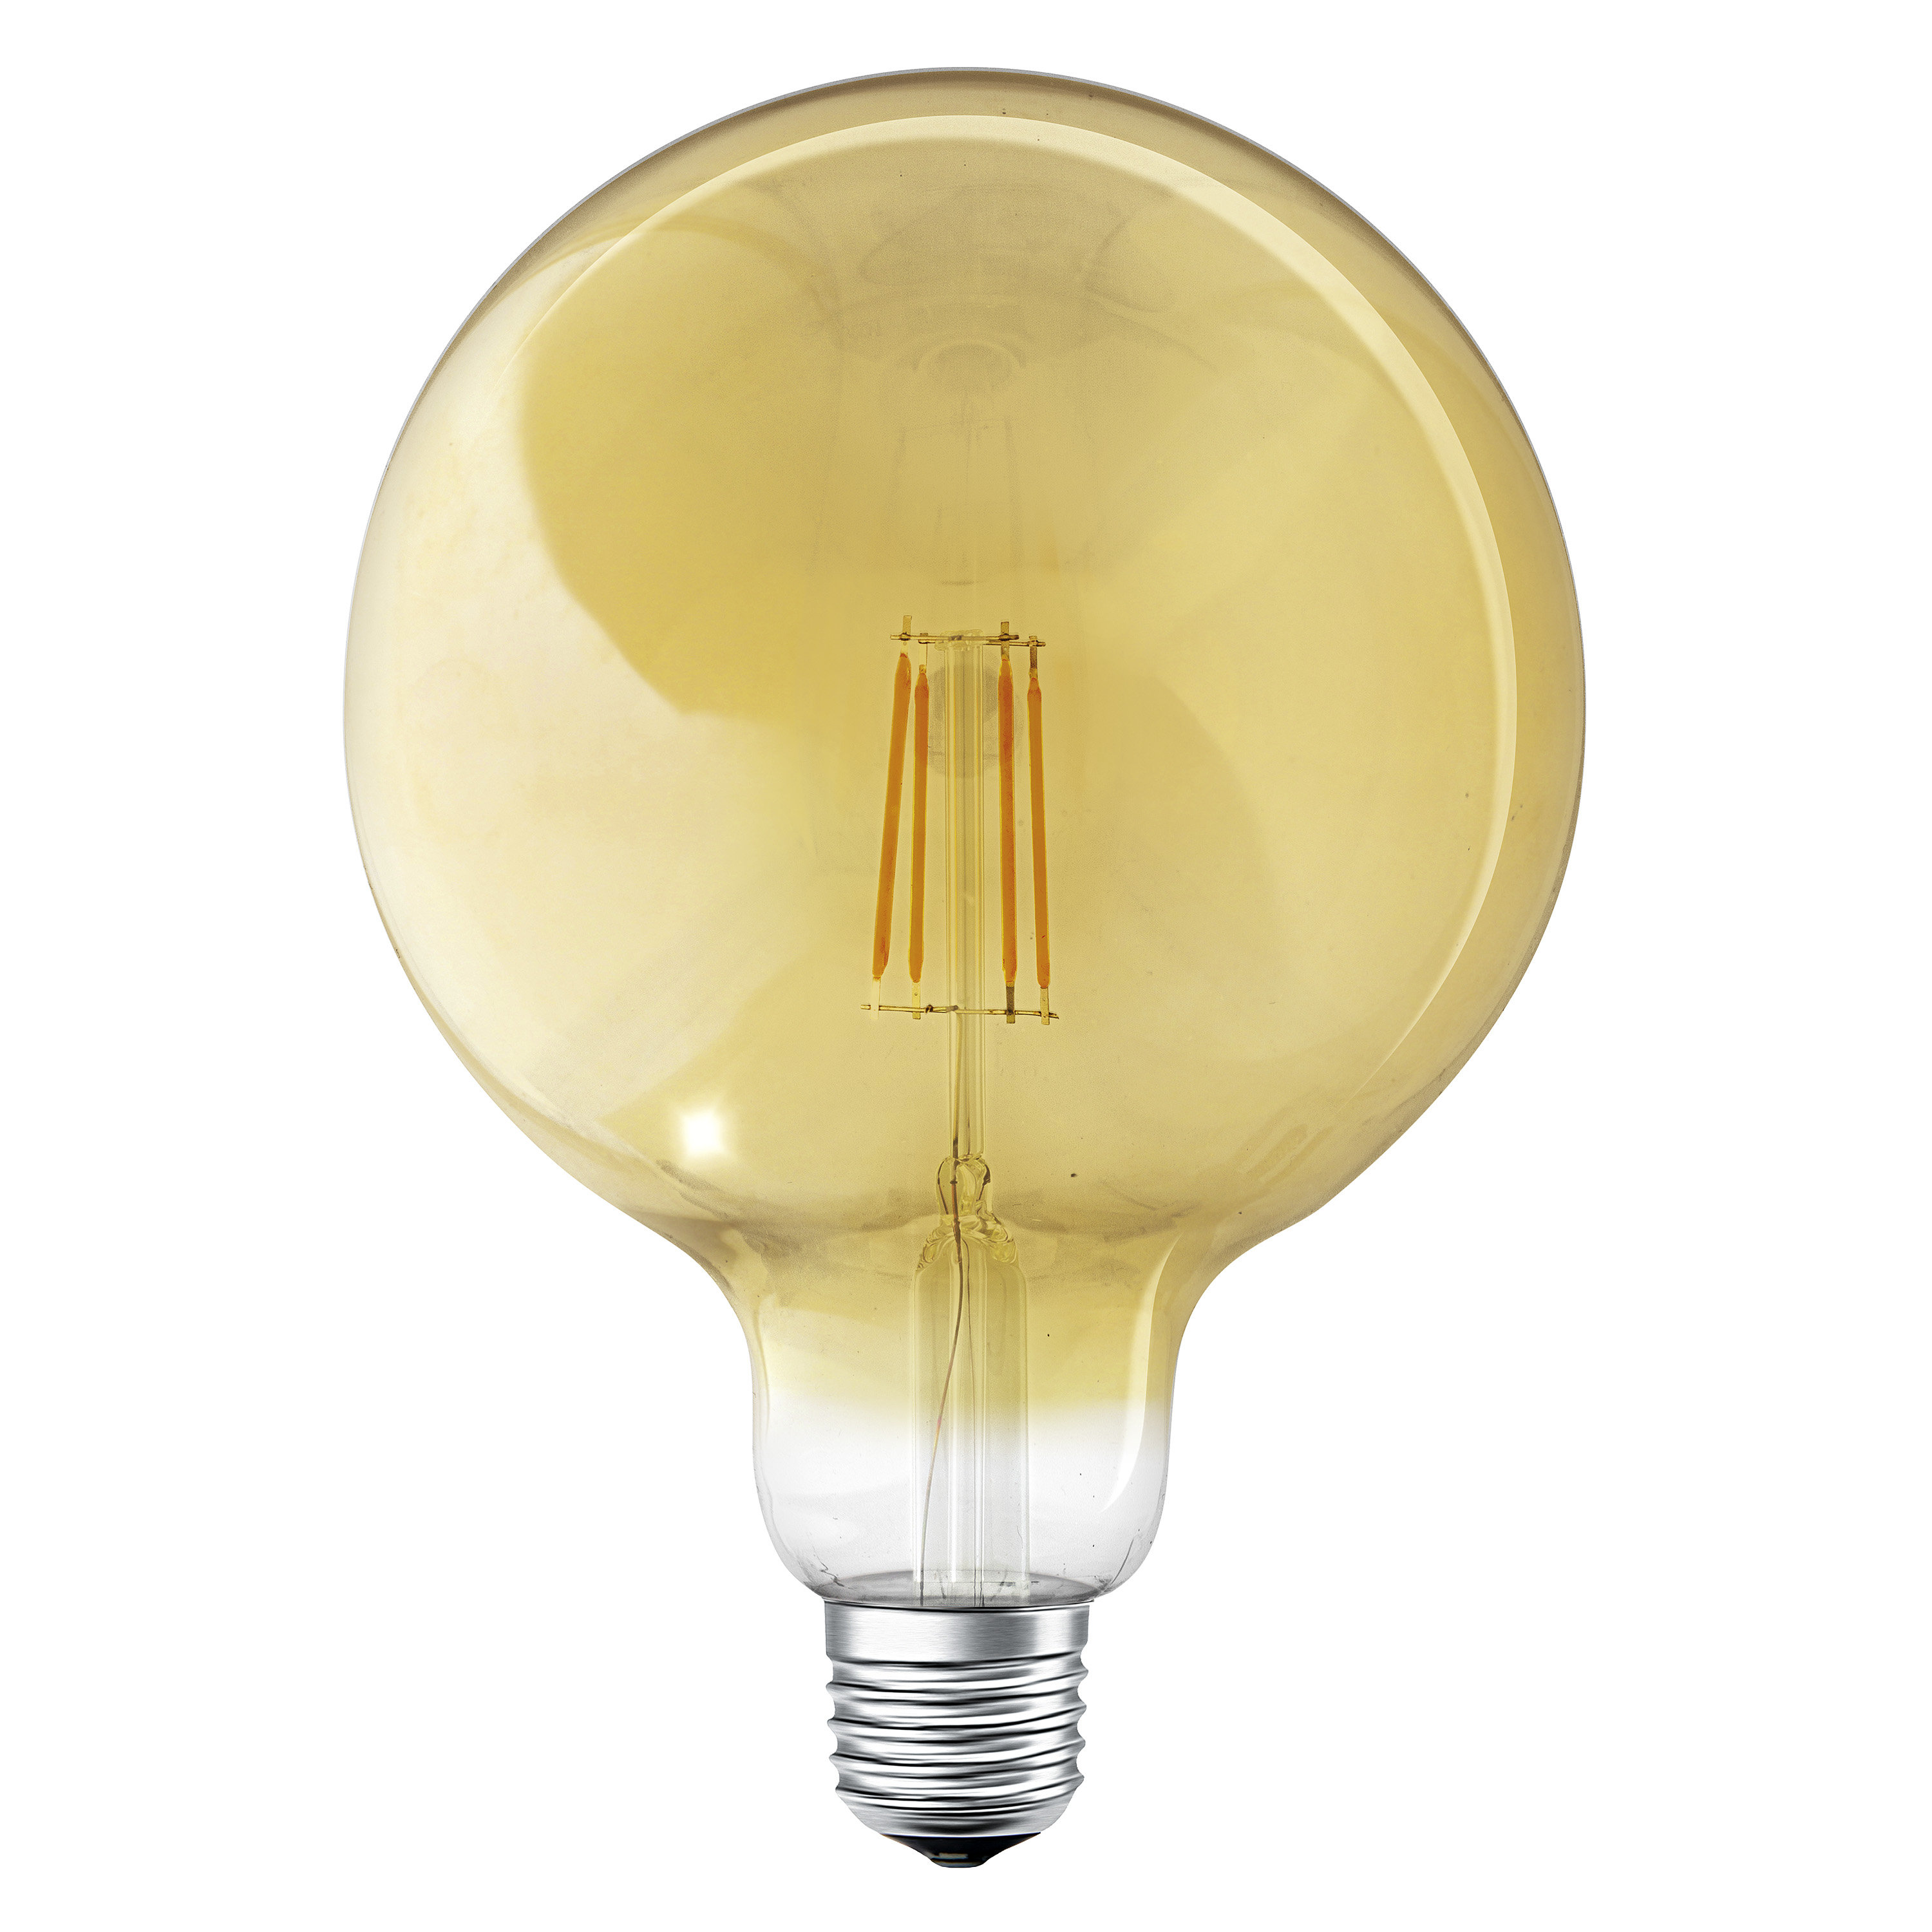 SMART+ Dimmable Globe Lampe Warmweiß LEDVANCE Filament LED